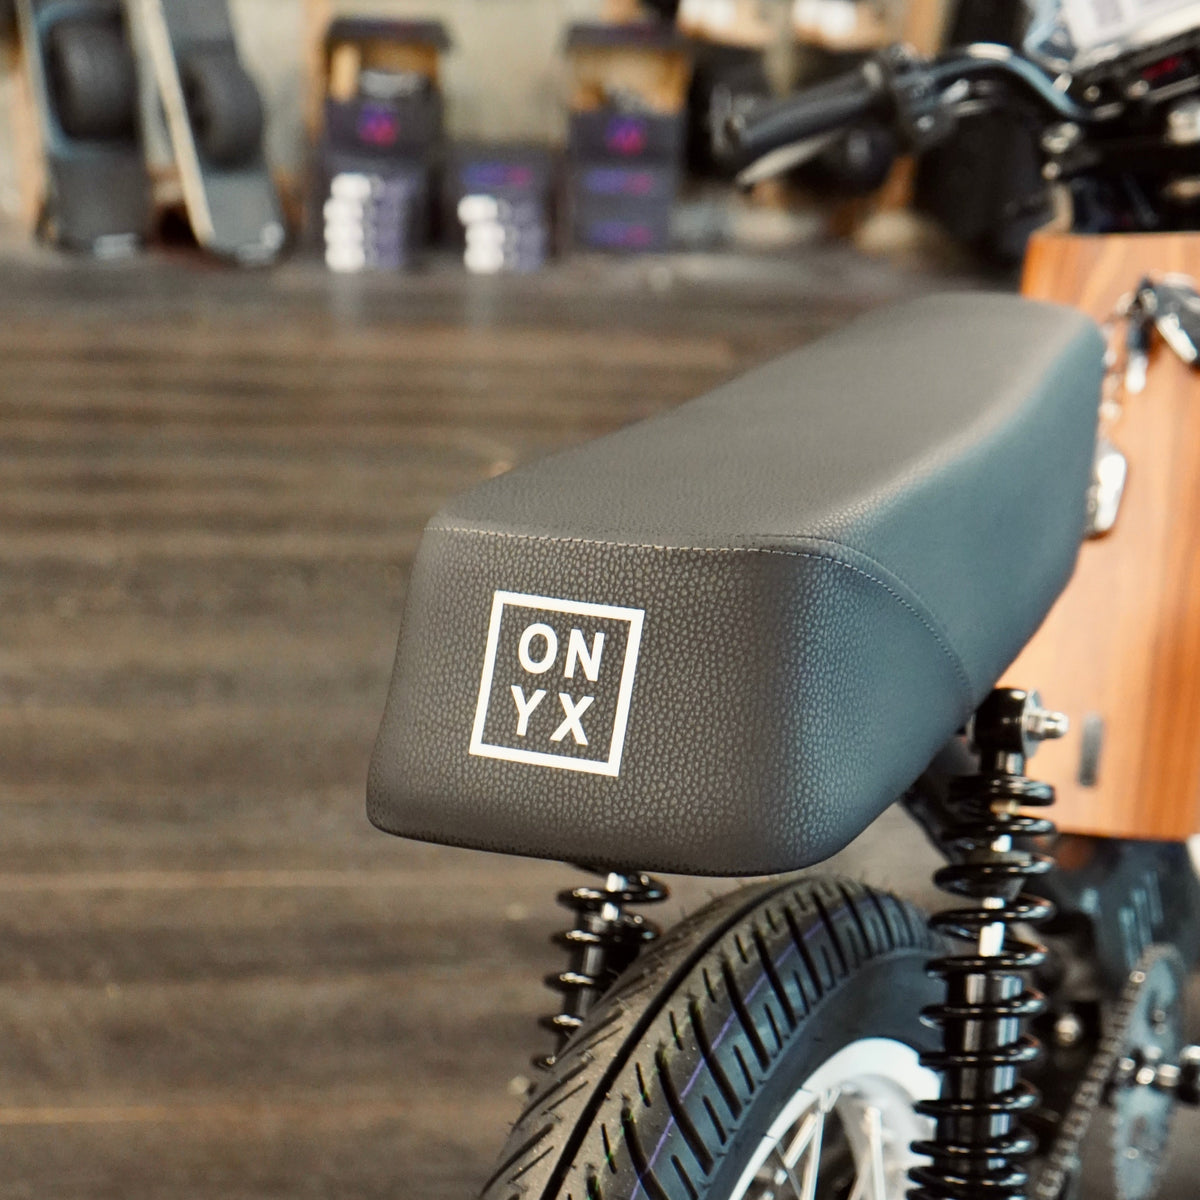 CTY2 - ONYX Electric Motorbike